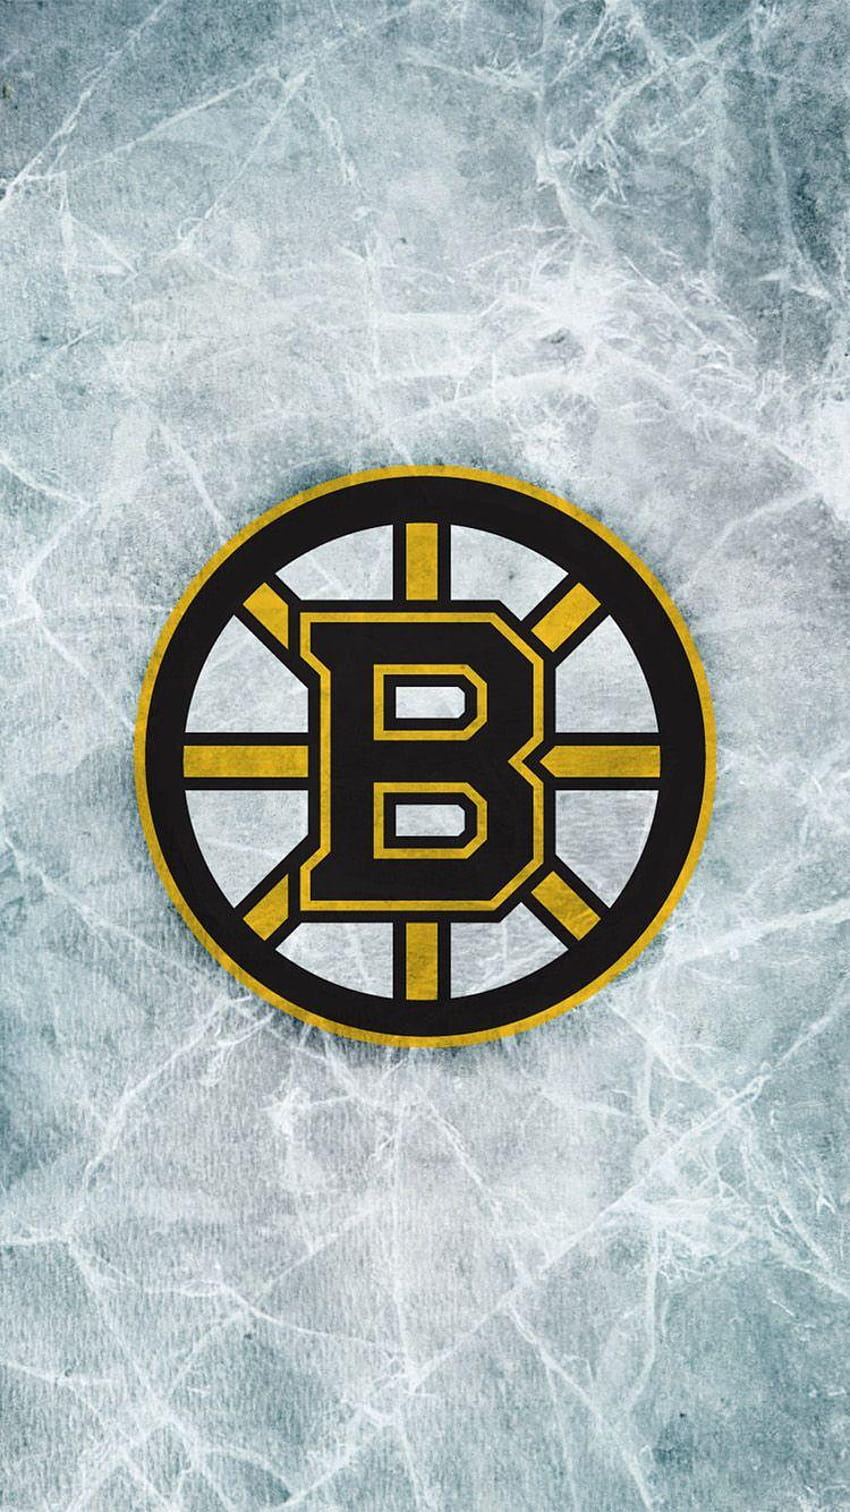 Boston Bruins Wallpaper by Maddox Reksten on Dribbble